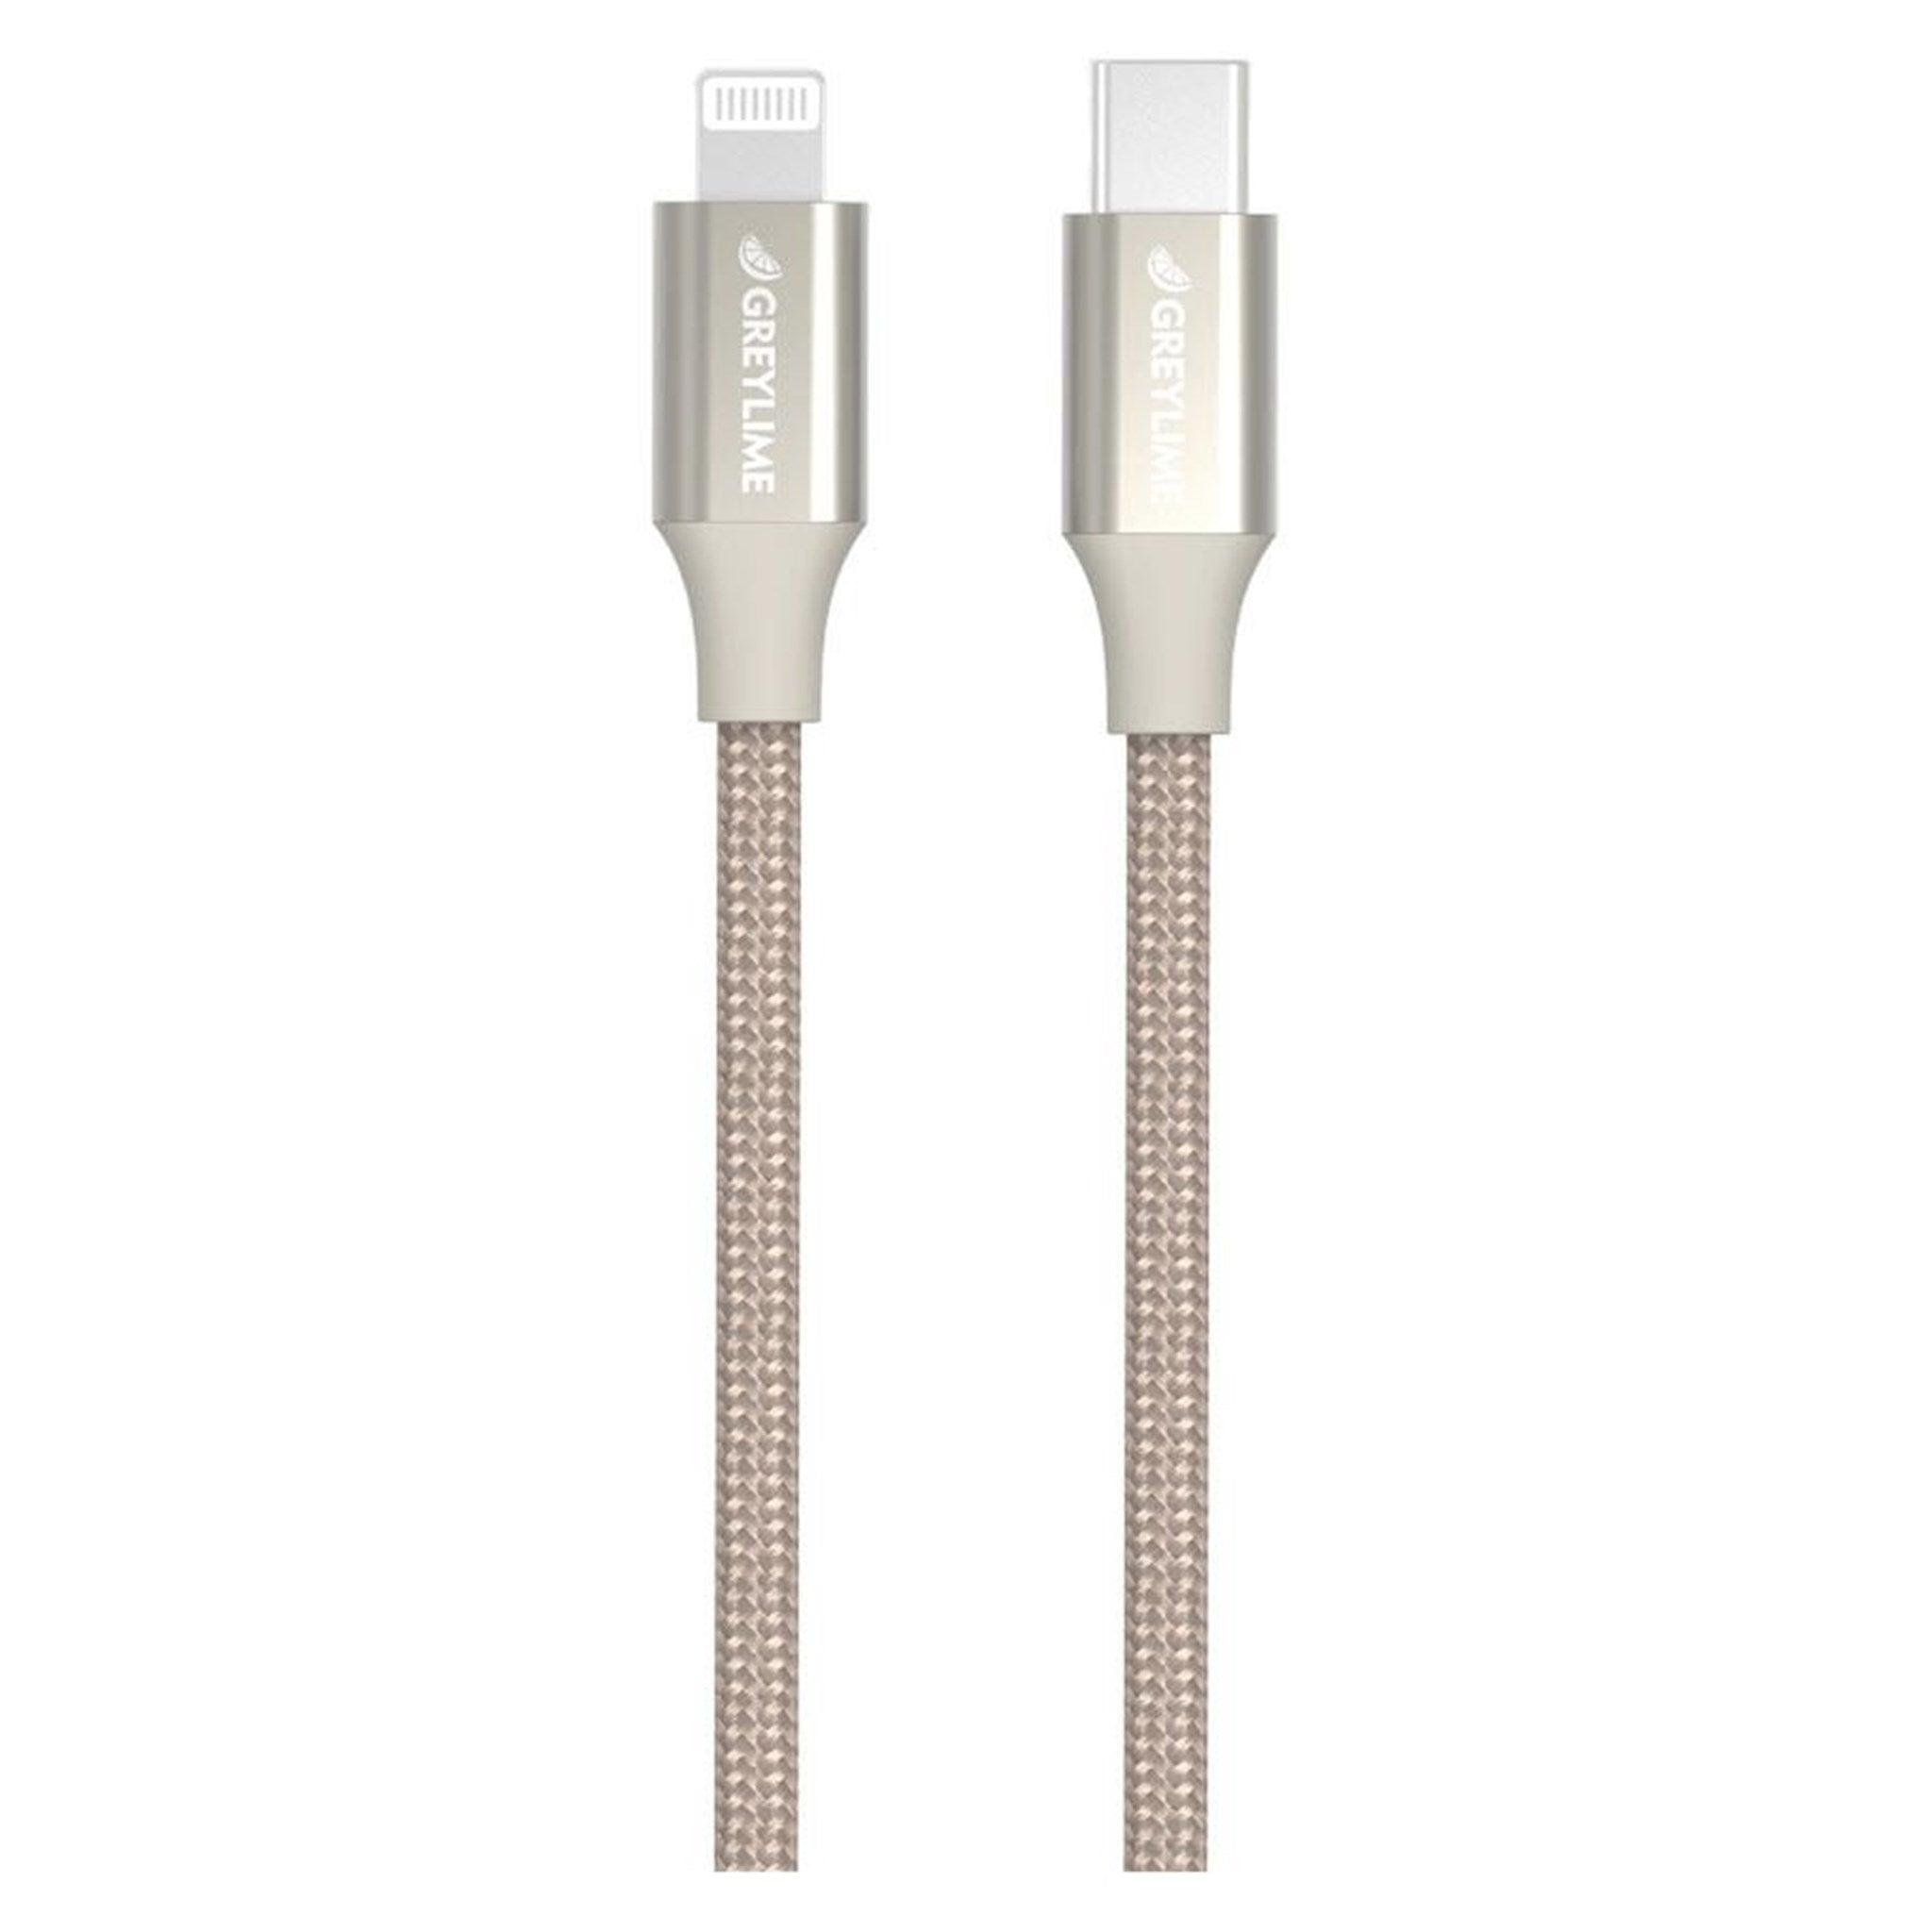 Billede af GreyLime Braided USB-C til MFi Lightning Kabel Beige 1 m hos GreyLime